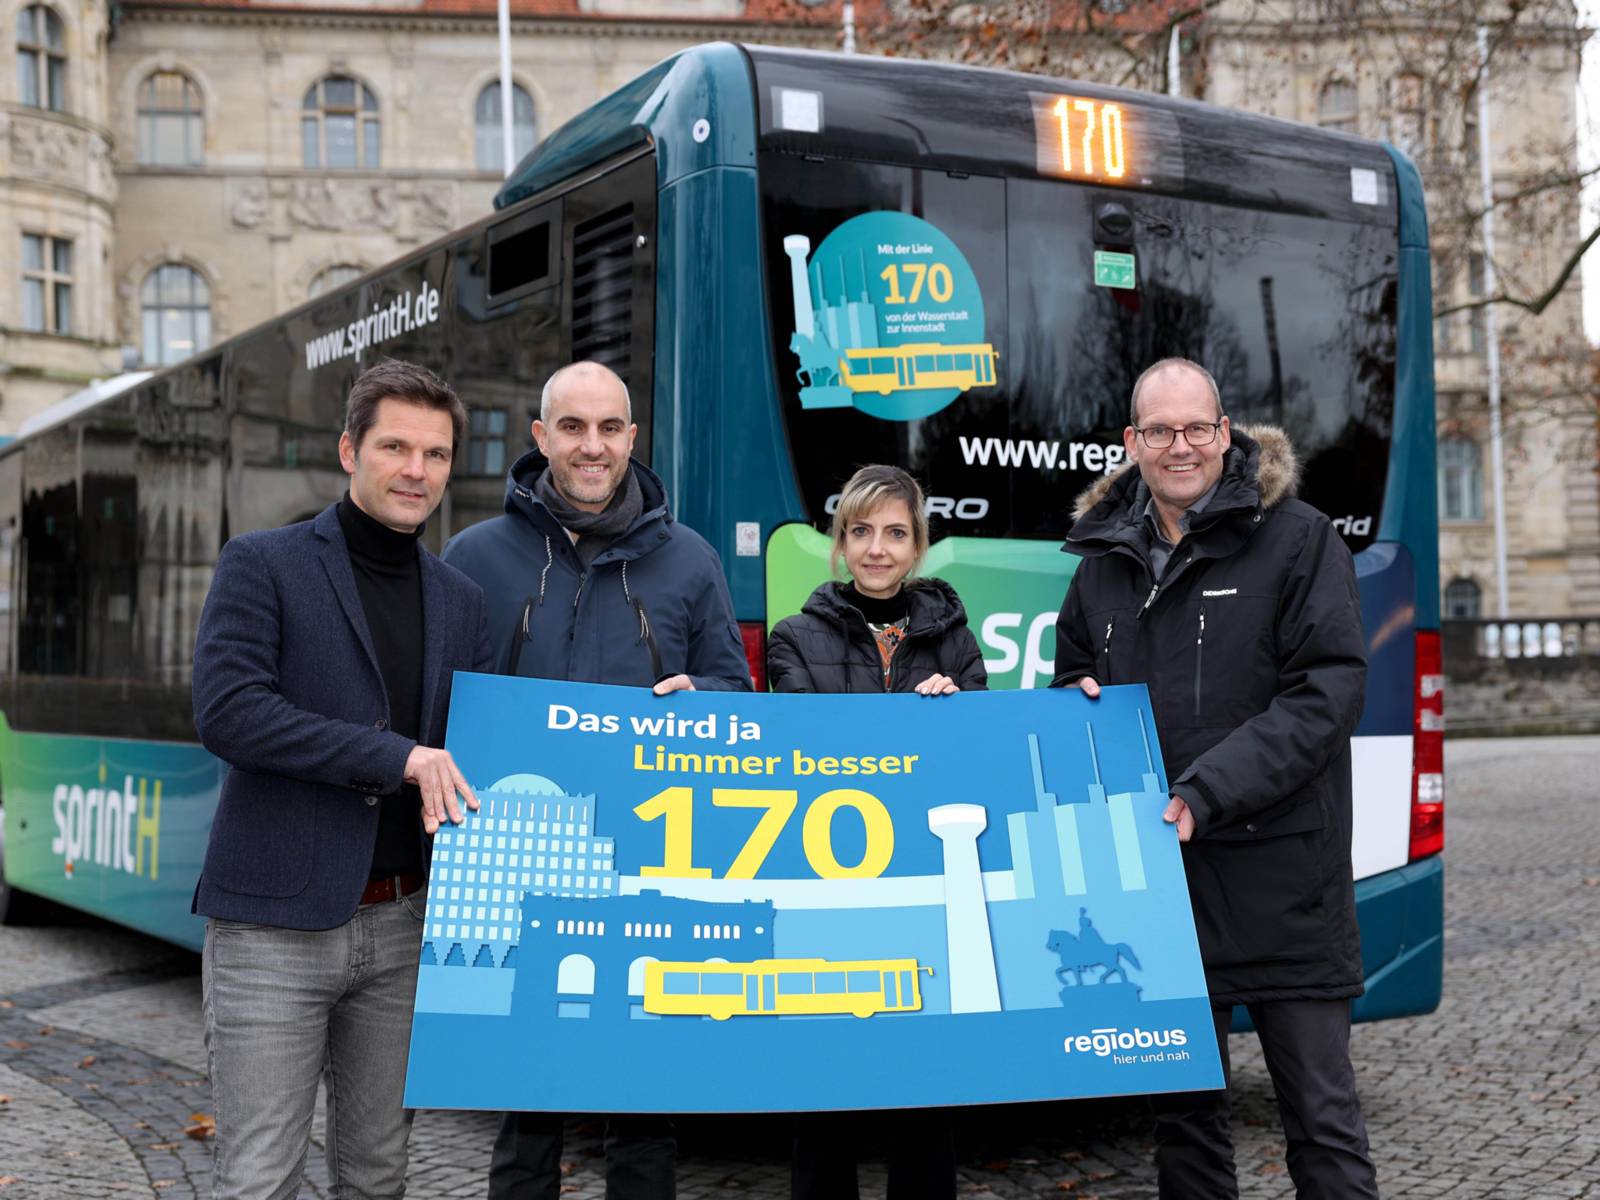 Vier Menschen halten ein Plakat hoch, auf dem die neue Regiobus Linie 170 beworben wird